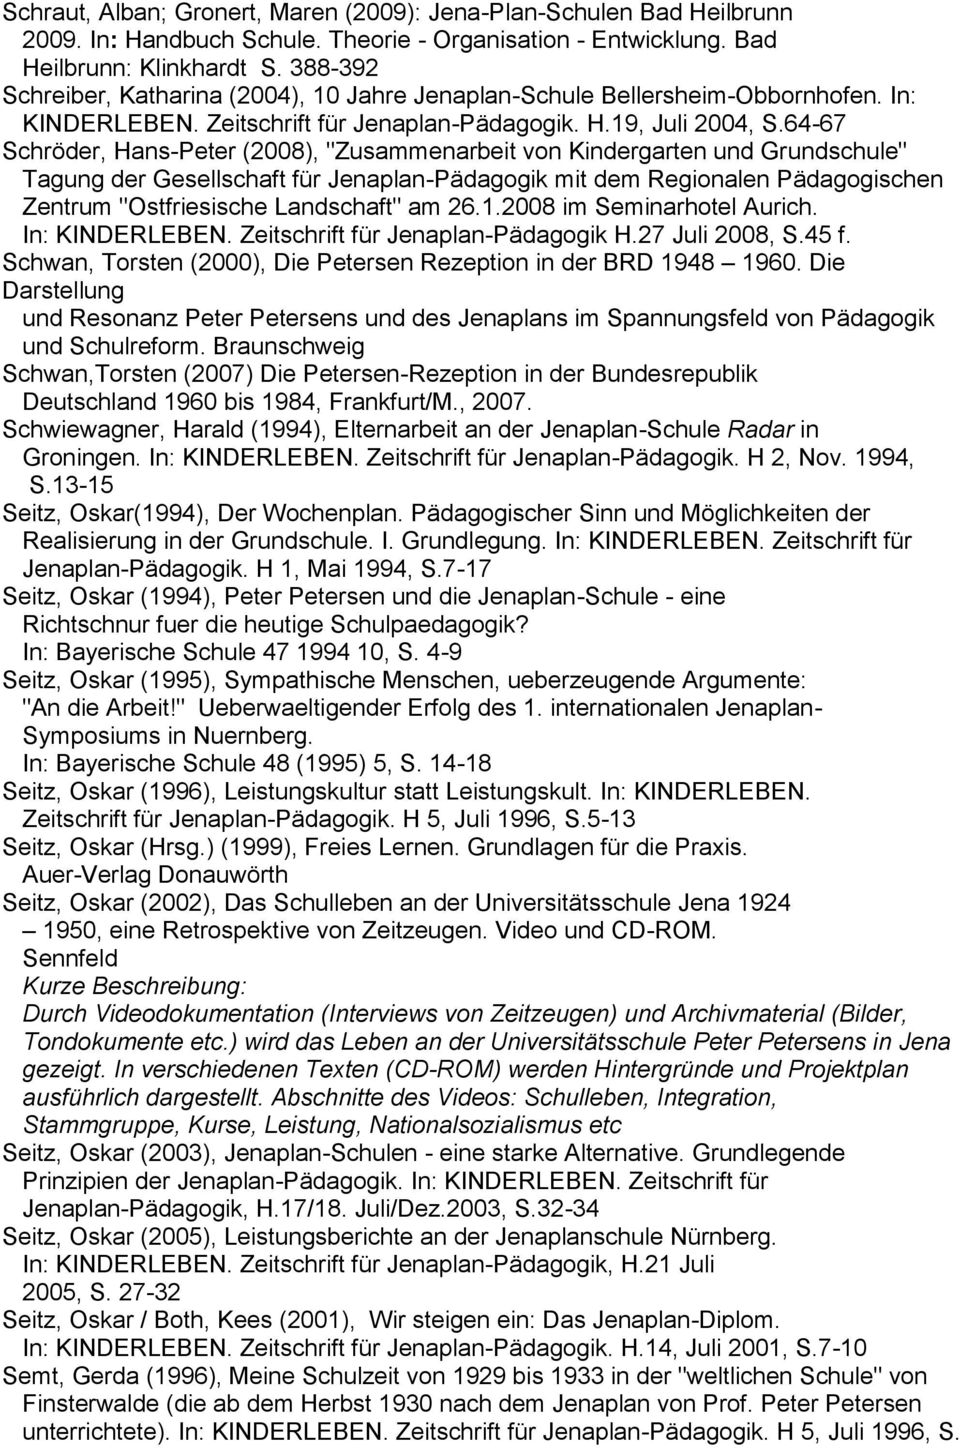 64-67 Schröder, Hans-Peter (2008), "Zusammenarbeit von Kindergarten und Grundschule" Tagung der Gesellschaft für Jenaplan-Pädagogik mit dem Regionalen Pädagogischen Zentrum "Ostfriesische Landschaft"